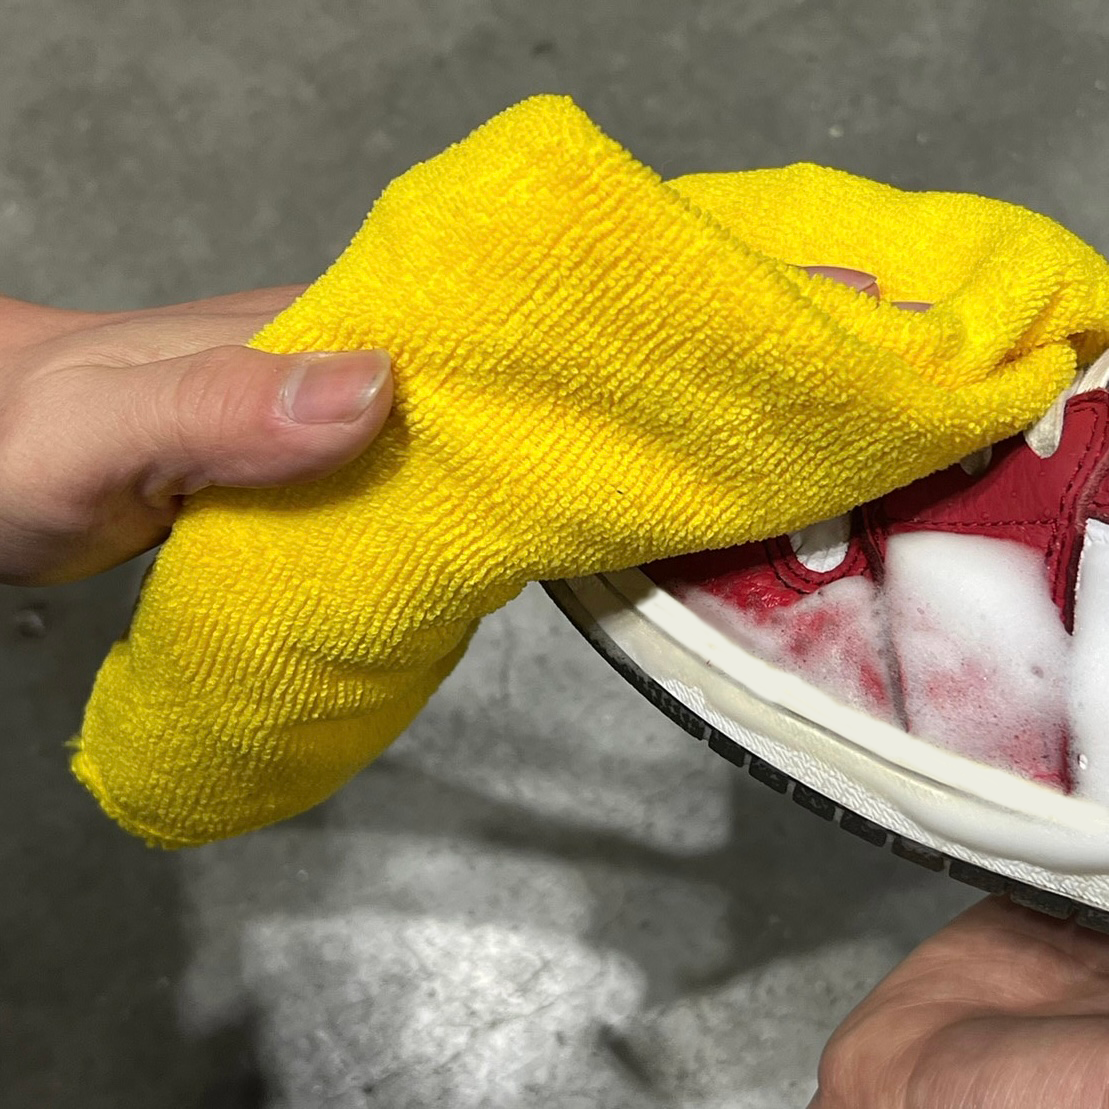 劇的靴洗浄剤 ジービーアールウォッシュ スニーカークリーナー 環境対策品 奇想天外摩訶不思議列伝シリーズ GBRWASH NEW